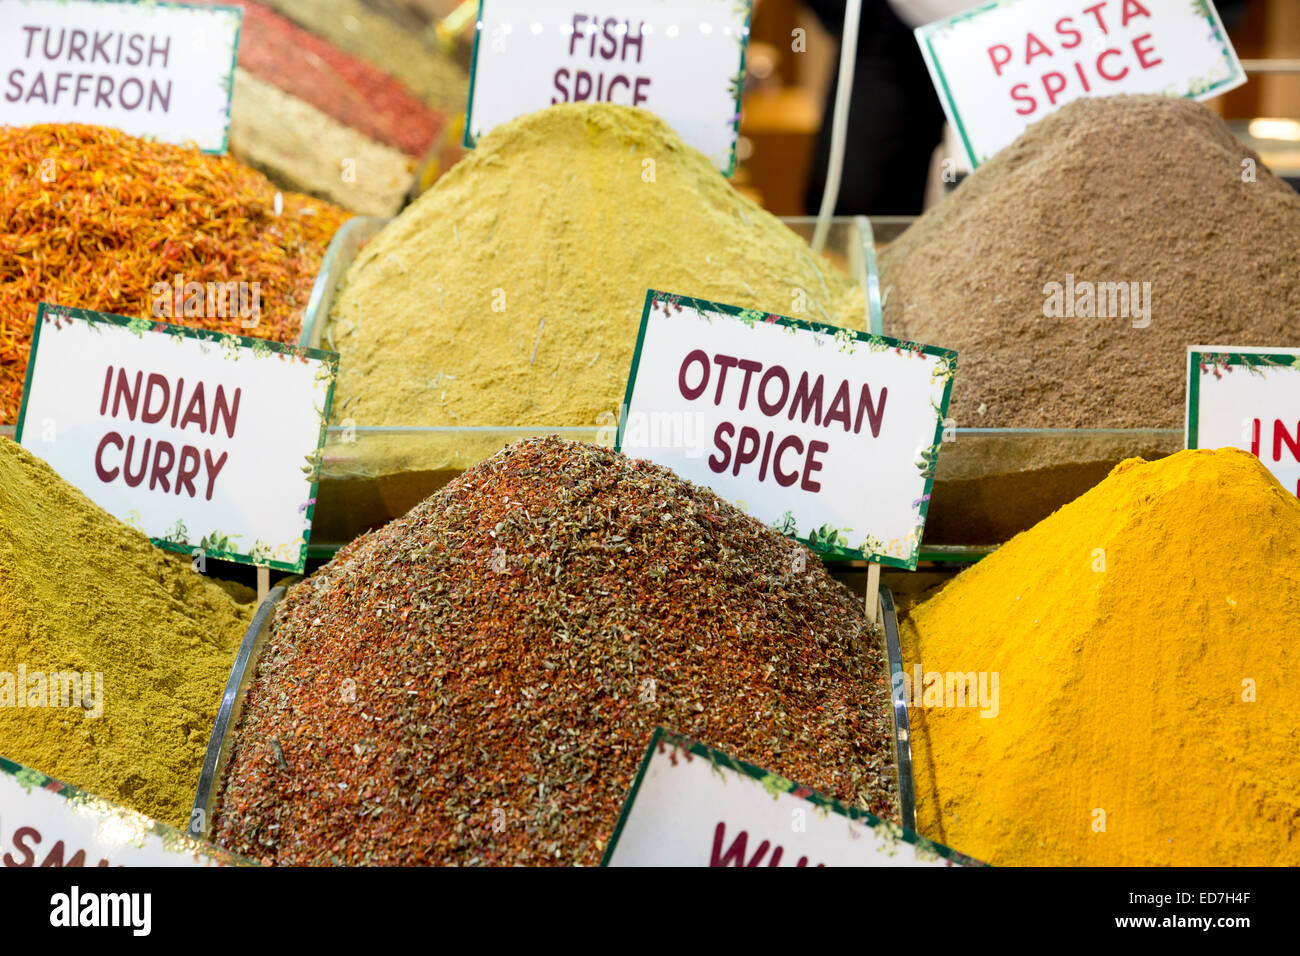 Traditionelle Gewürze - Safran, curry, Ottomane, Misir Carsisi ägyptischen Basar Lebensmittel und Gewürz-Markt, Istanbul, Türkei Stockfoto